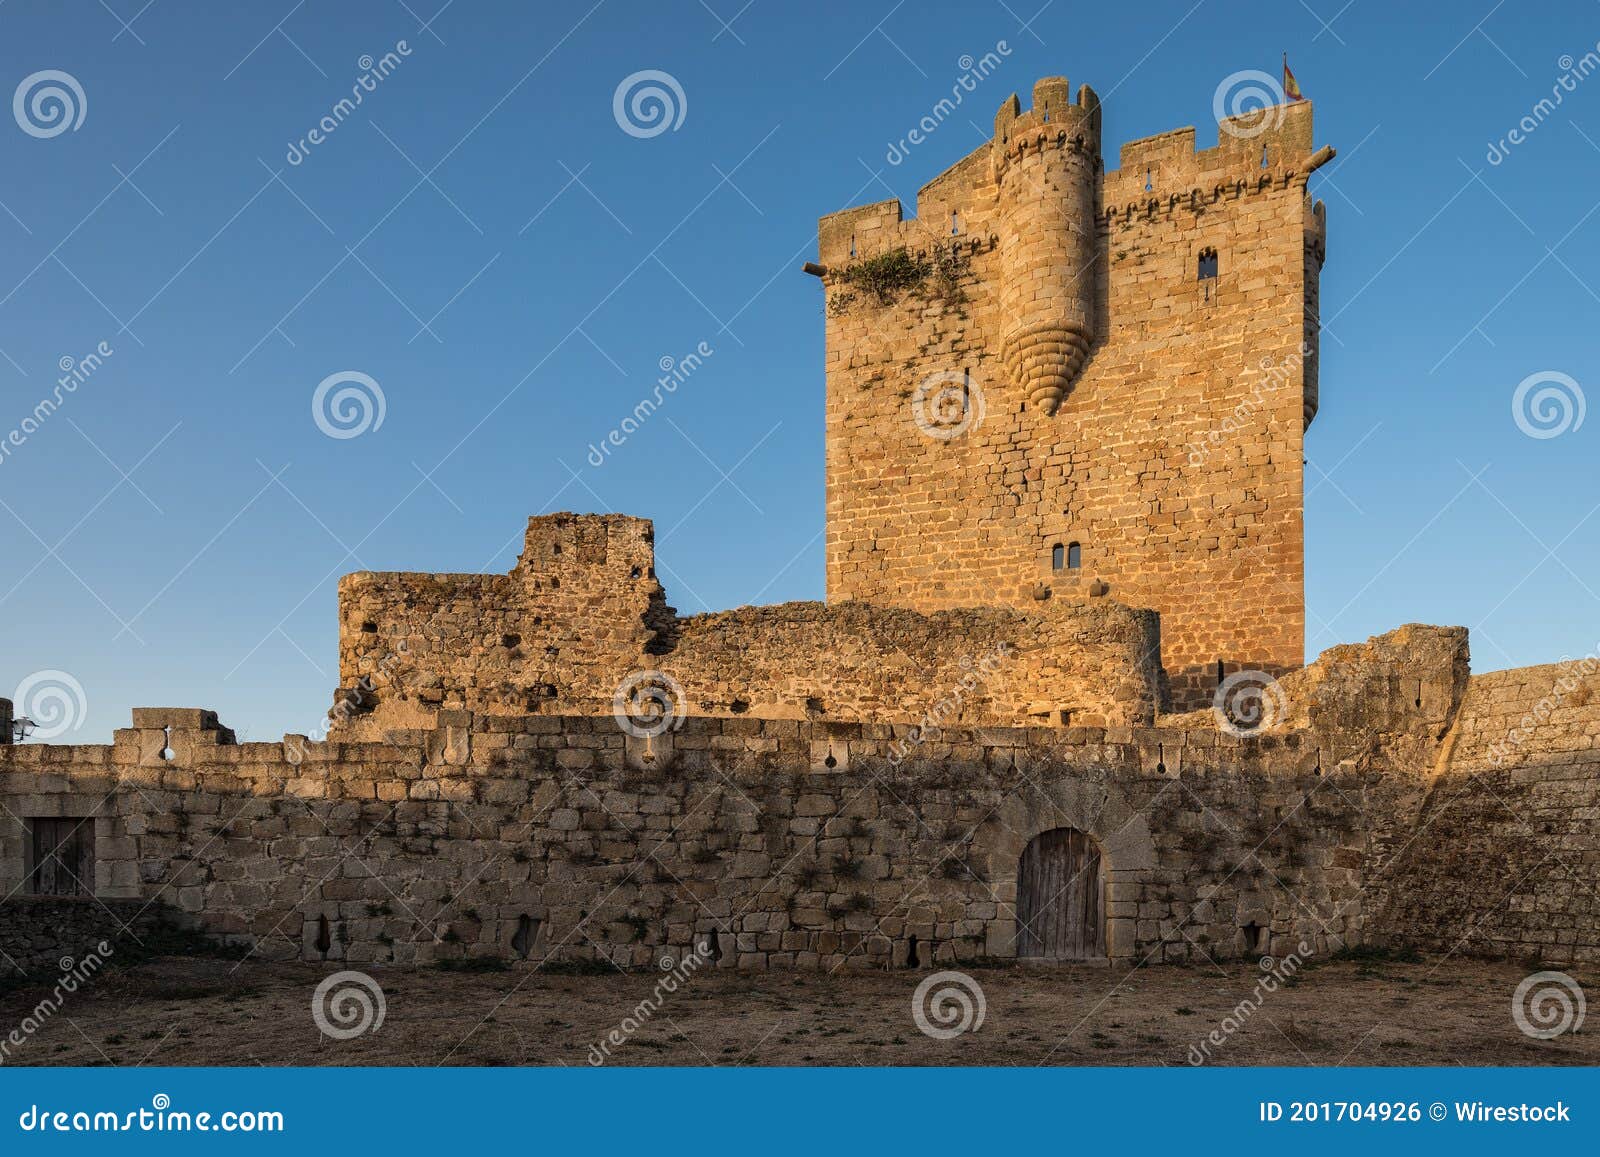 ancient medieval castle in san felices de los gallegos, spain